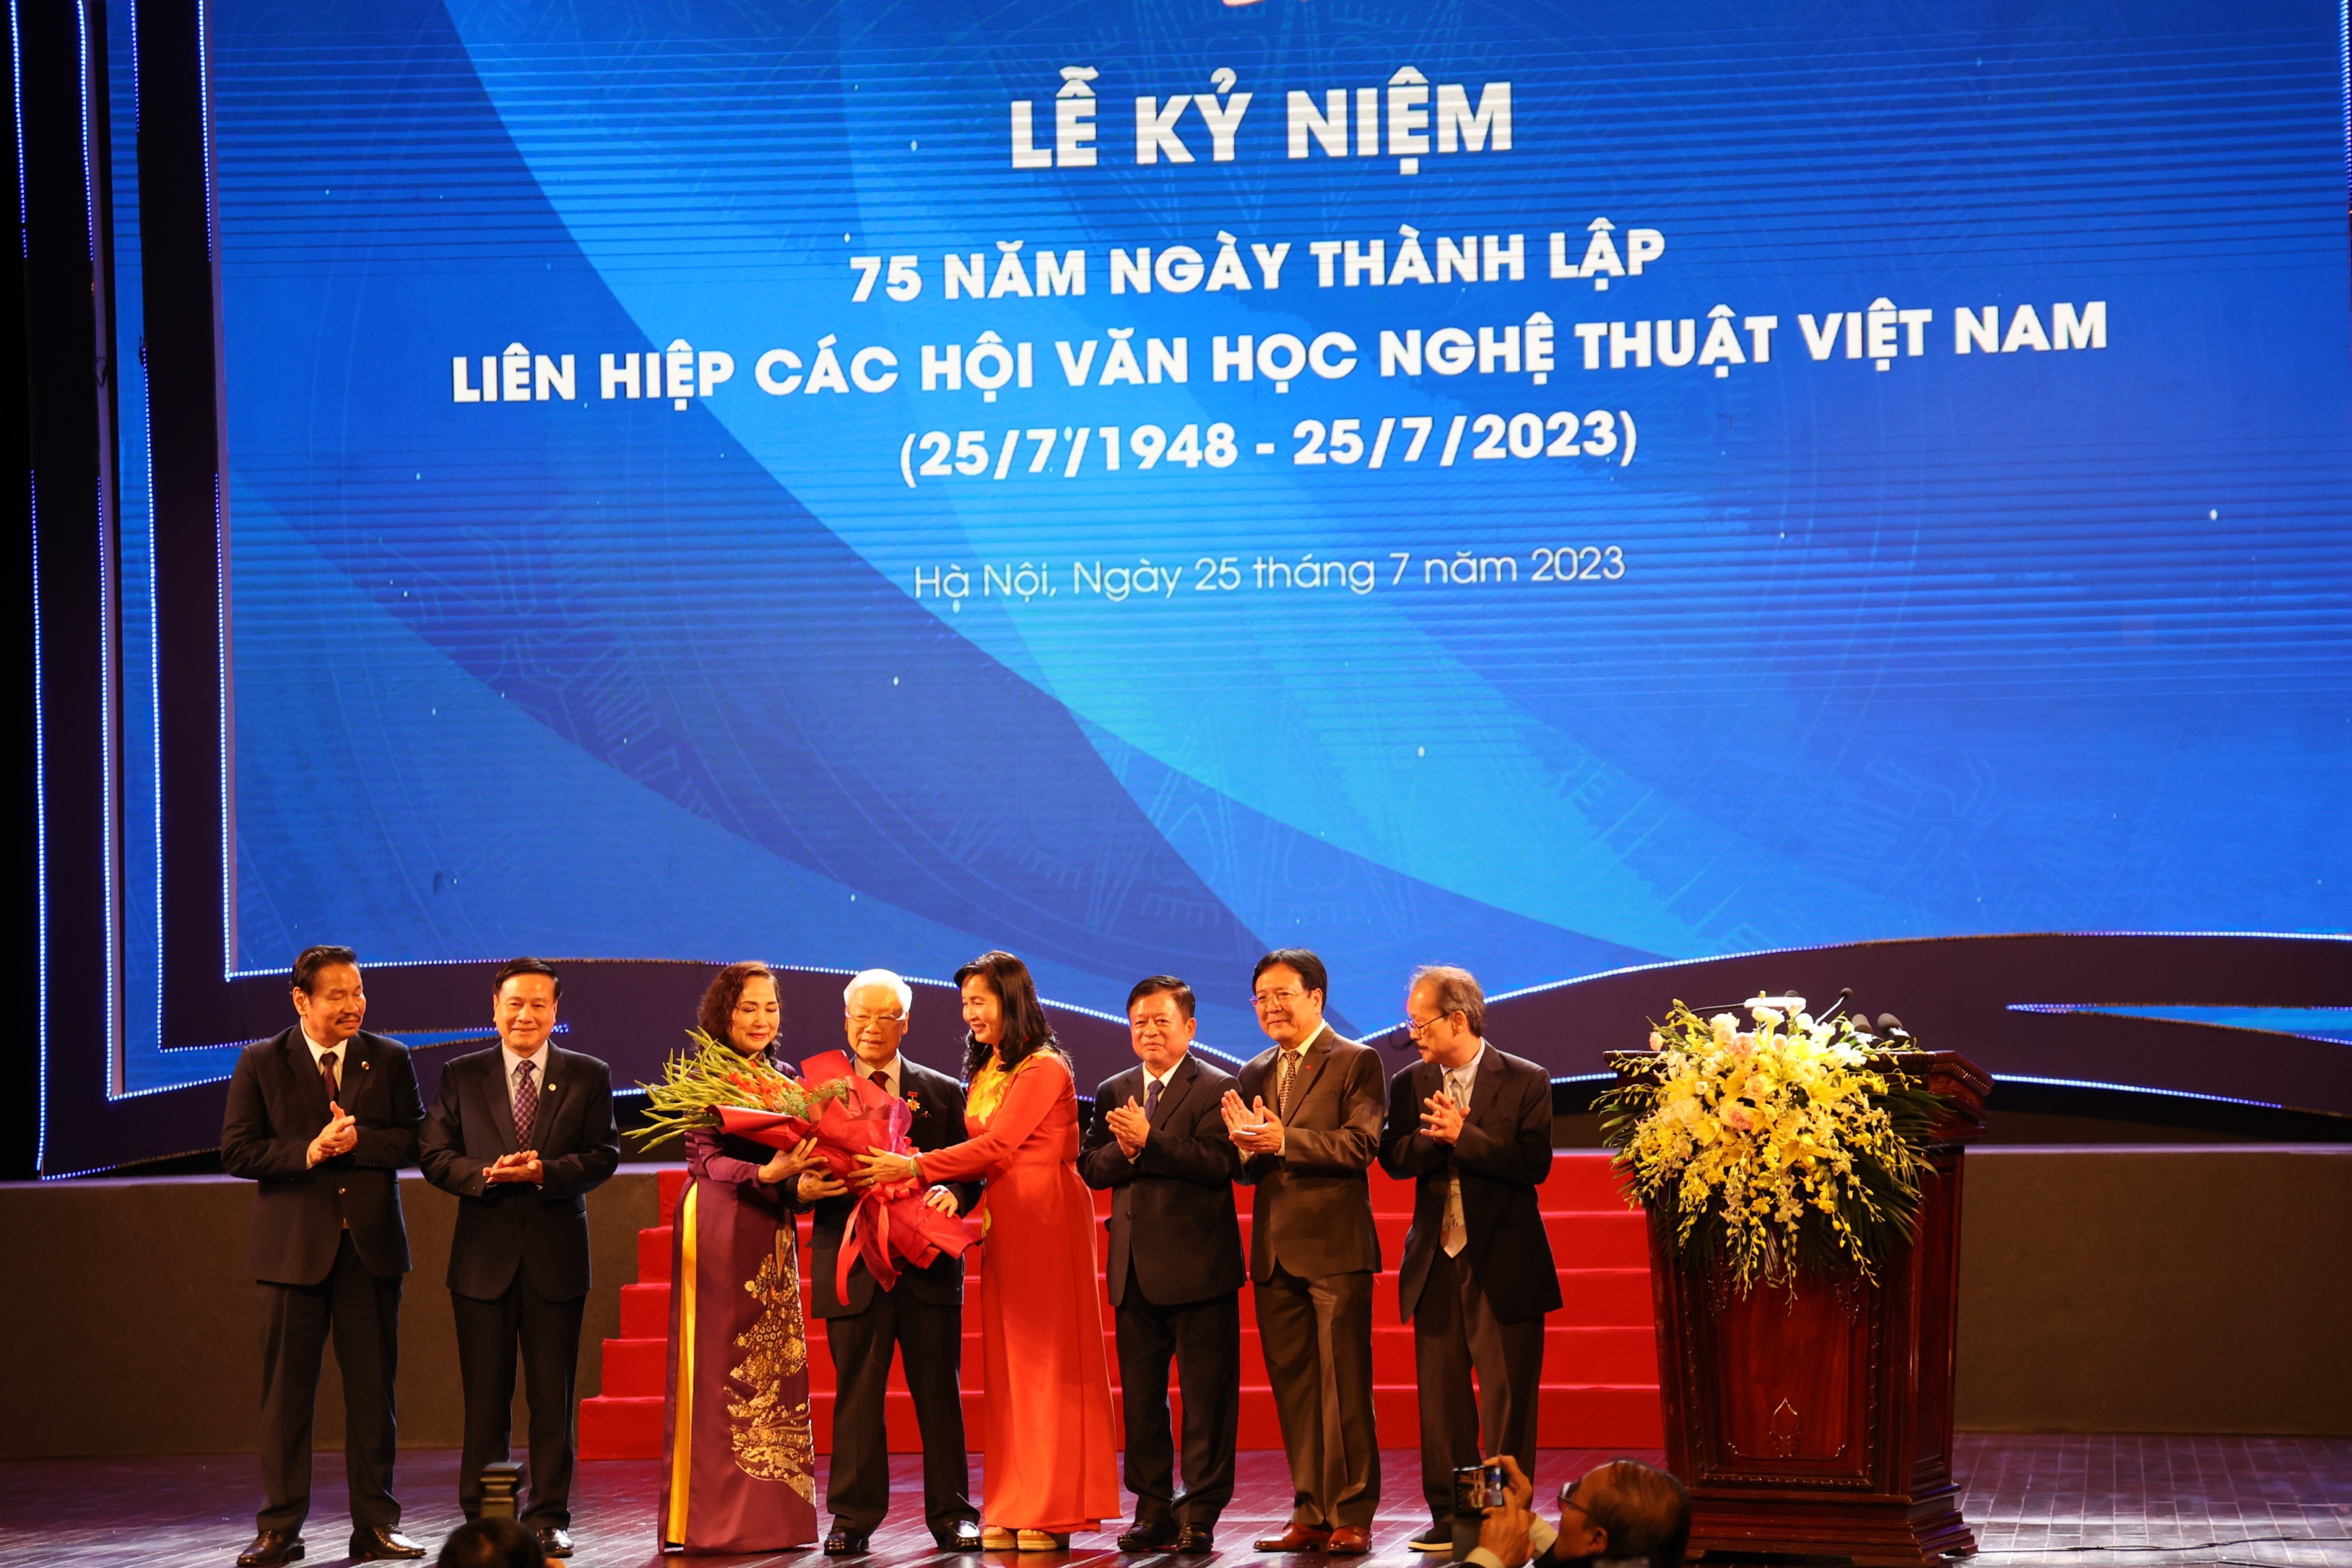 (Ảnh) Lễ kỷ niệm 75 năm thành lập Liên hiệp các Hội Văn học nghệ thuật Việt Nam - 16